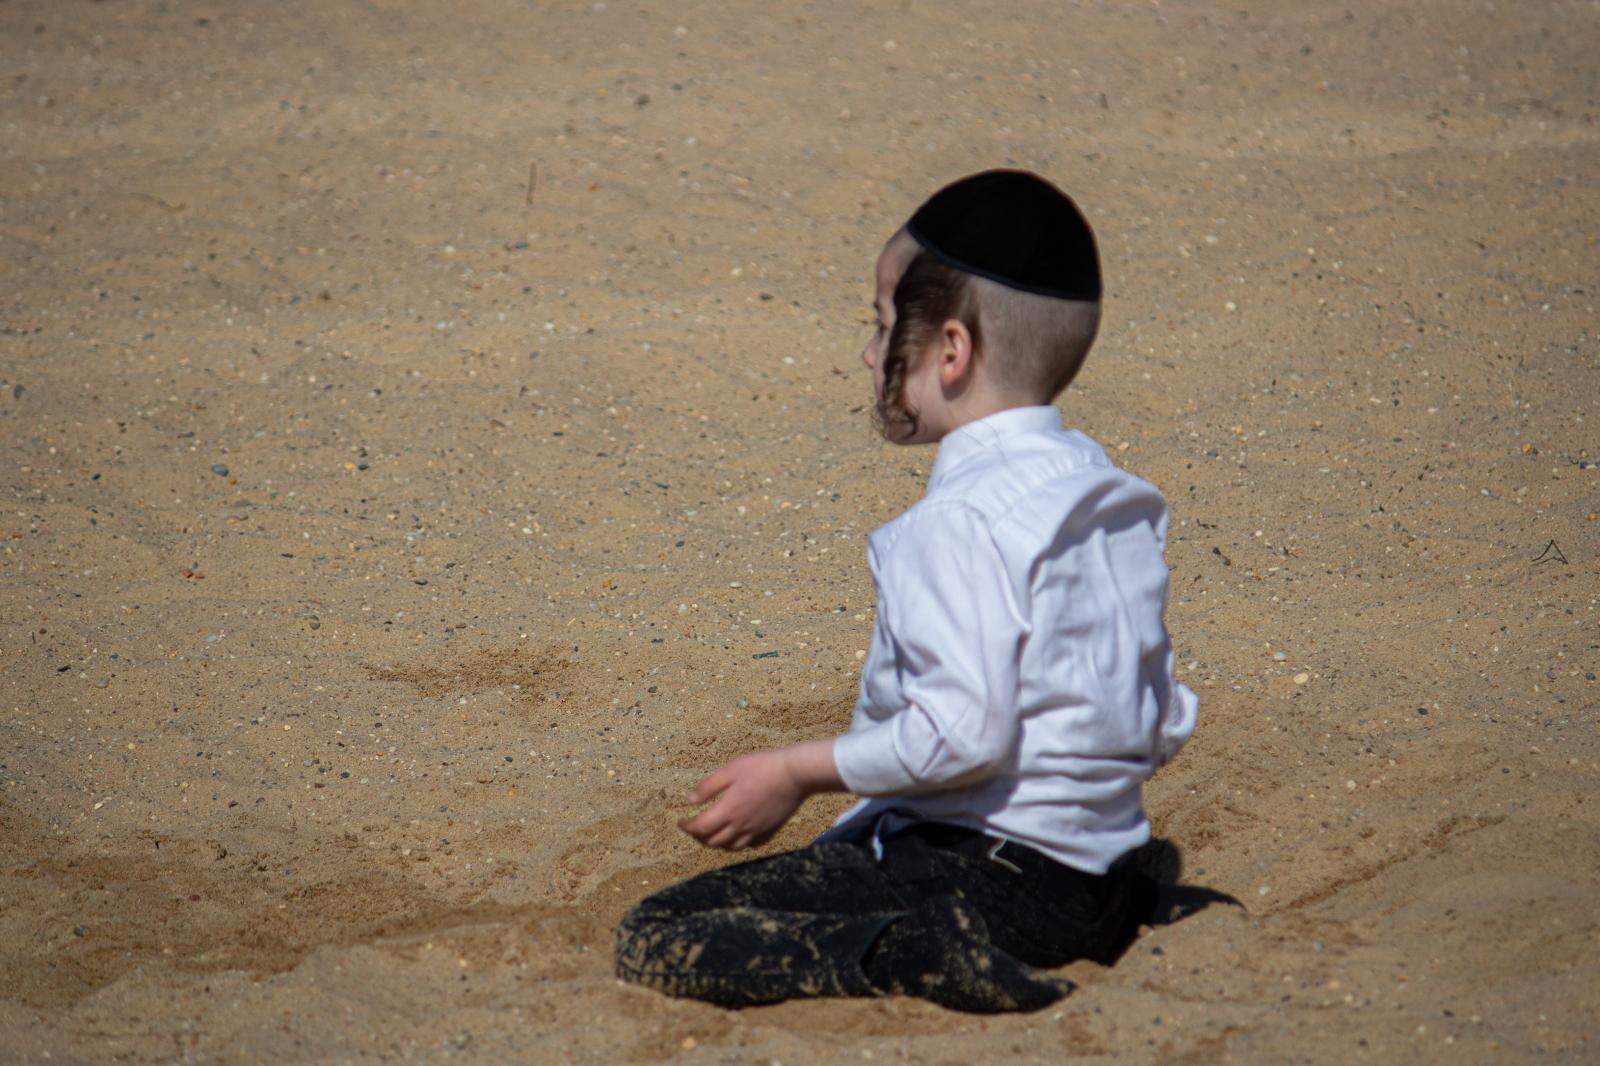 Preschooler in the Sandbox  | Buy this image